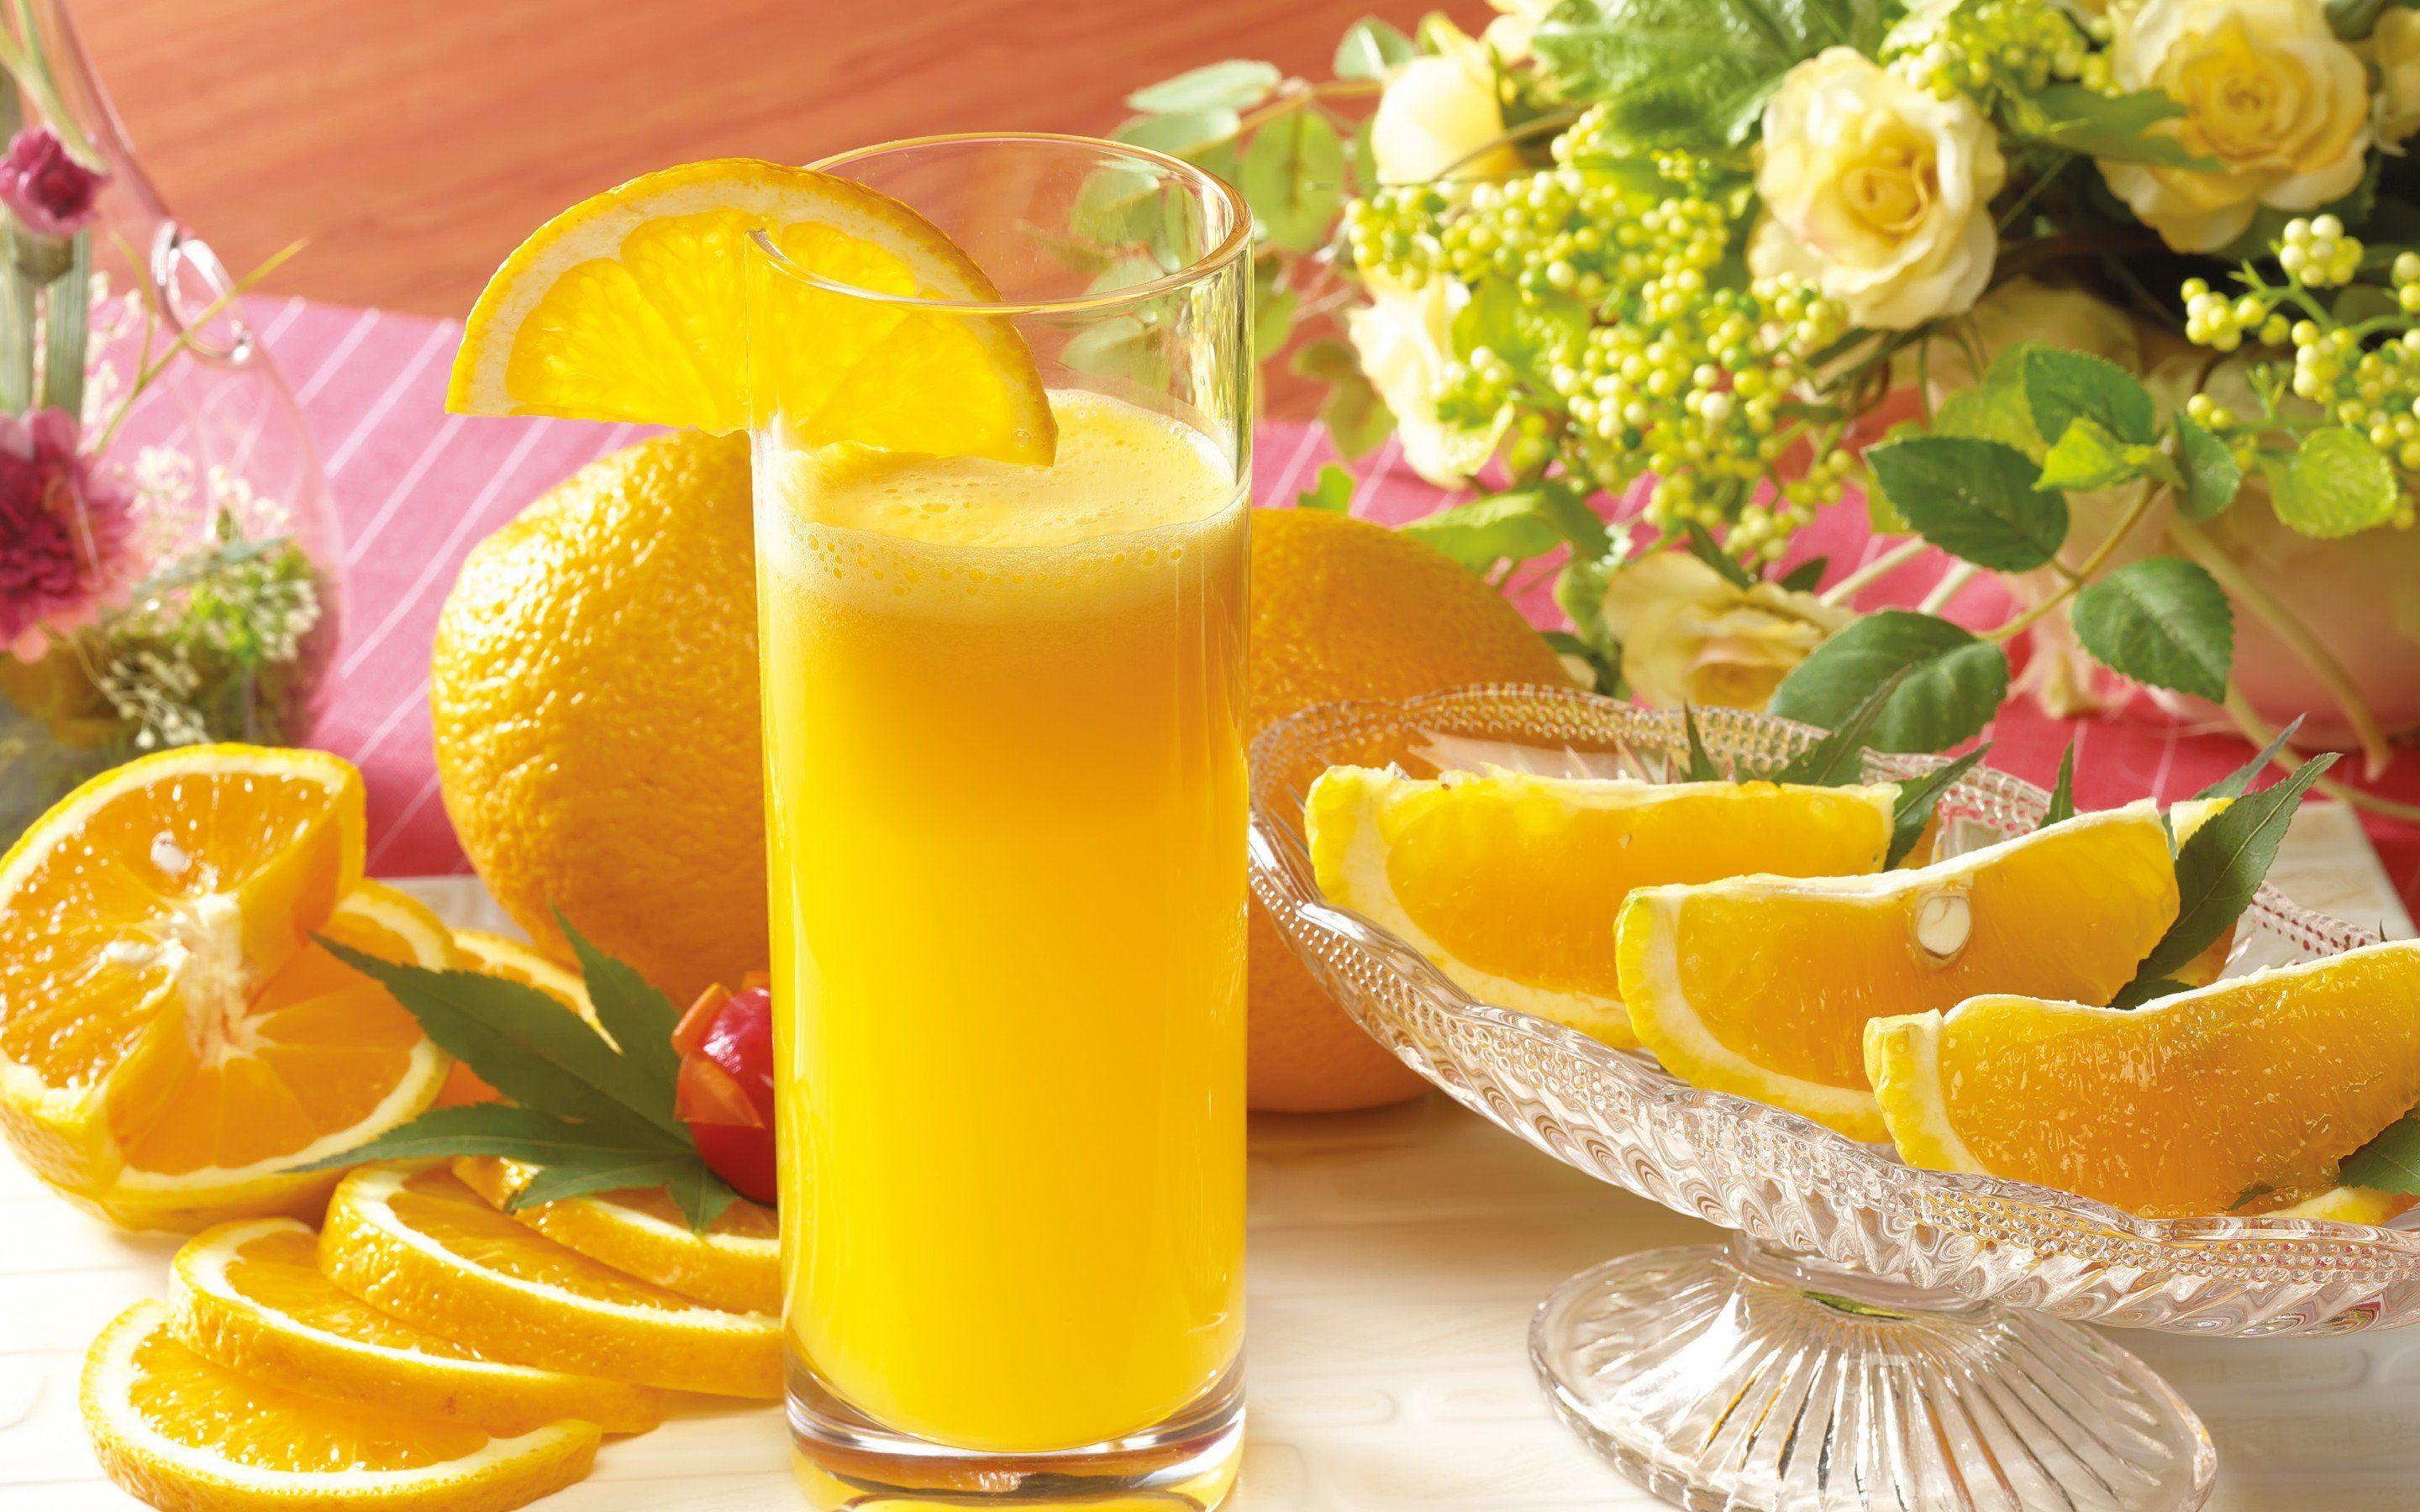 Orange Juice Wallpaper